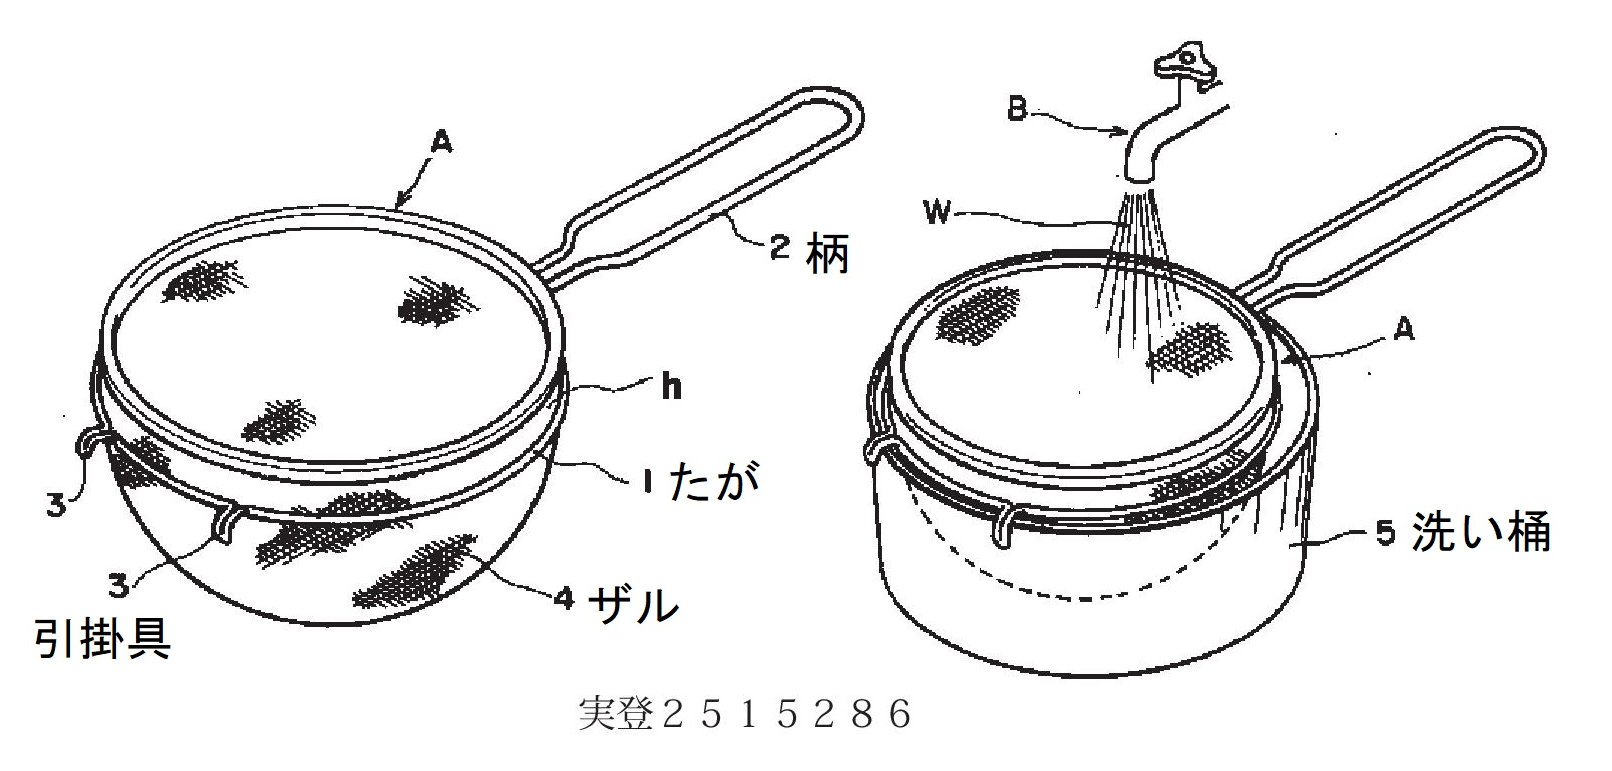 特許・実用新案の例：調理用ザル